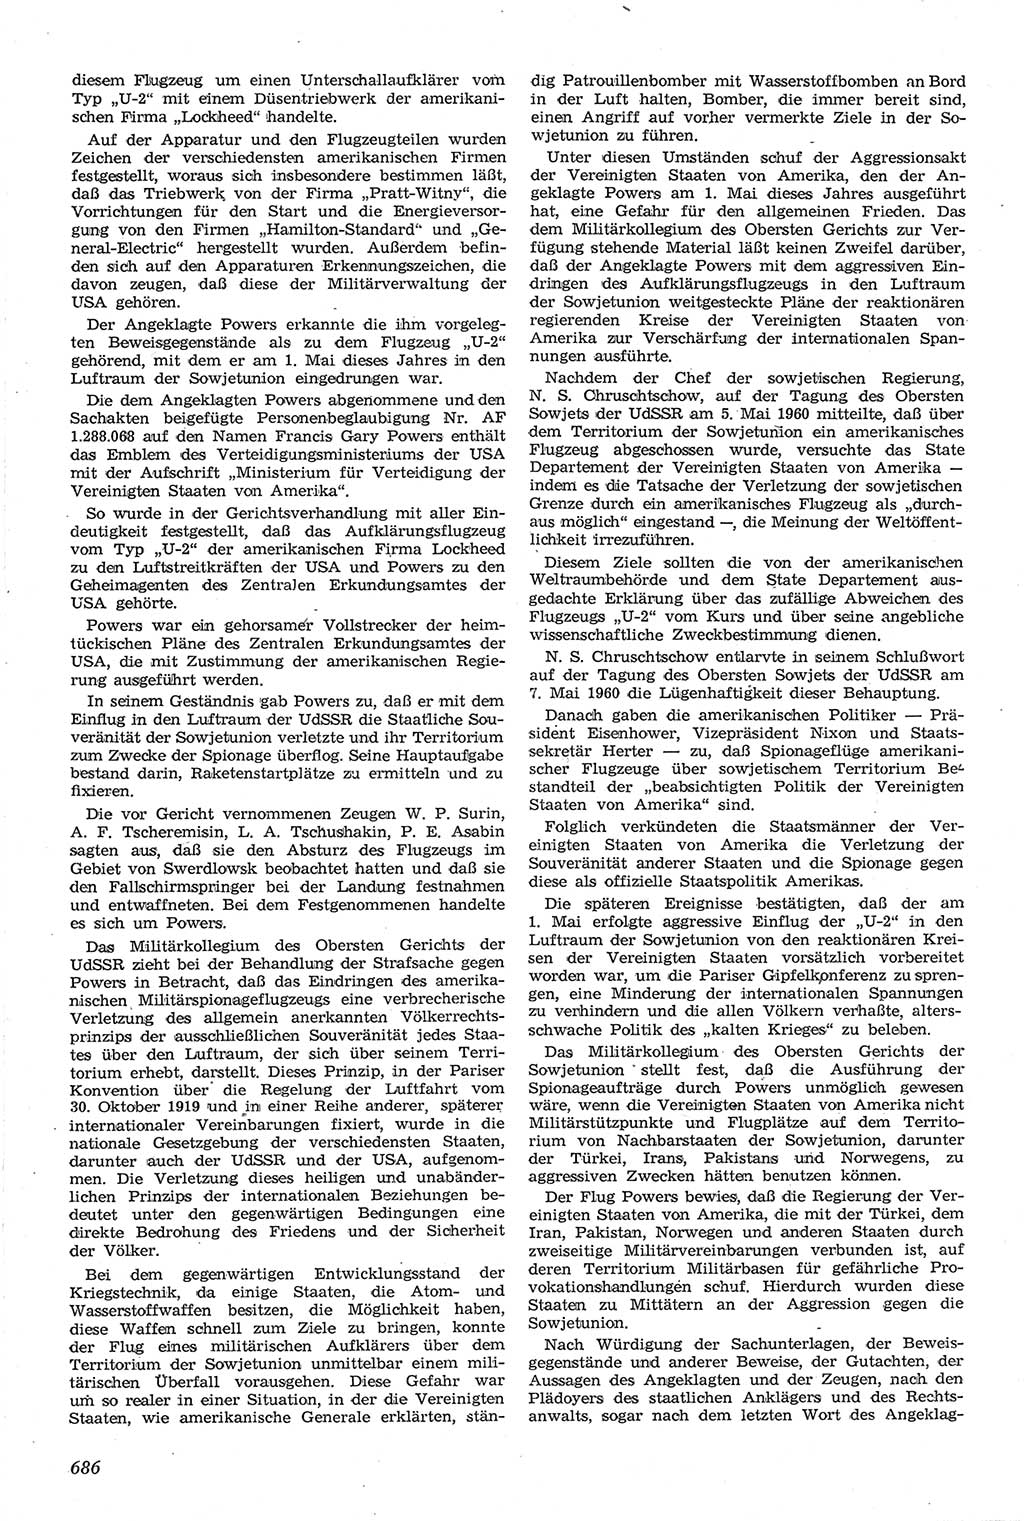 Neue Justiz (NJ), Zeitschrift für Recht und Rechtswissenschaft [Deutsche Demokratische Republik (DDR)], 14. Jahrgang 1960, Seite 686 (NJ DDR 1960, S. 686)